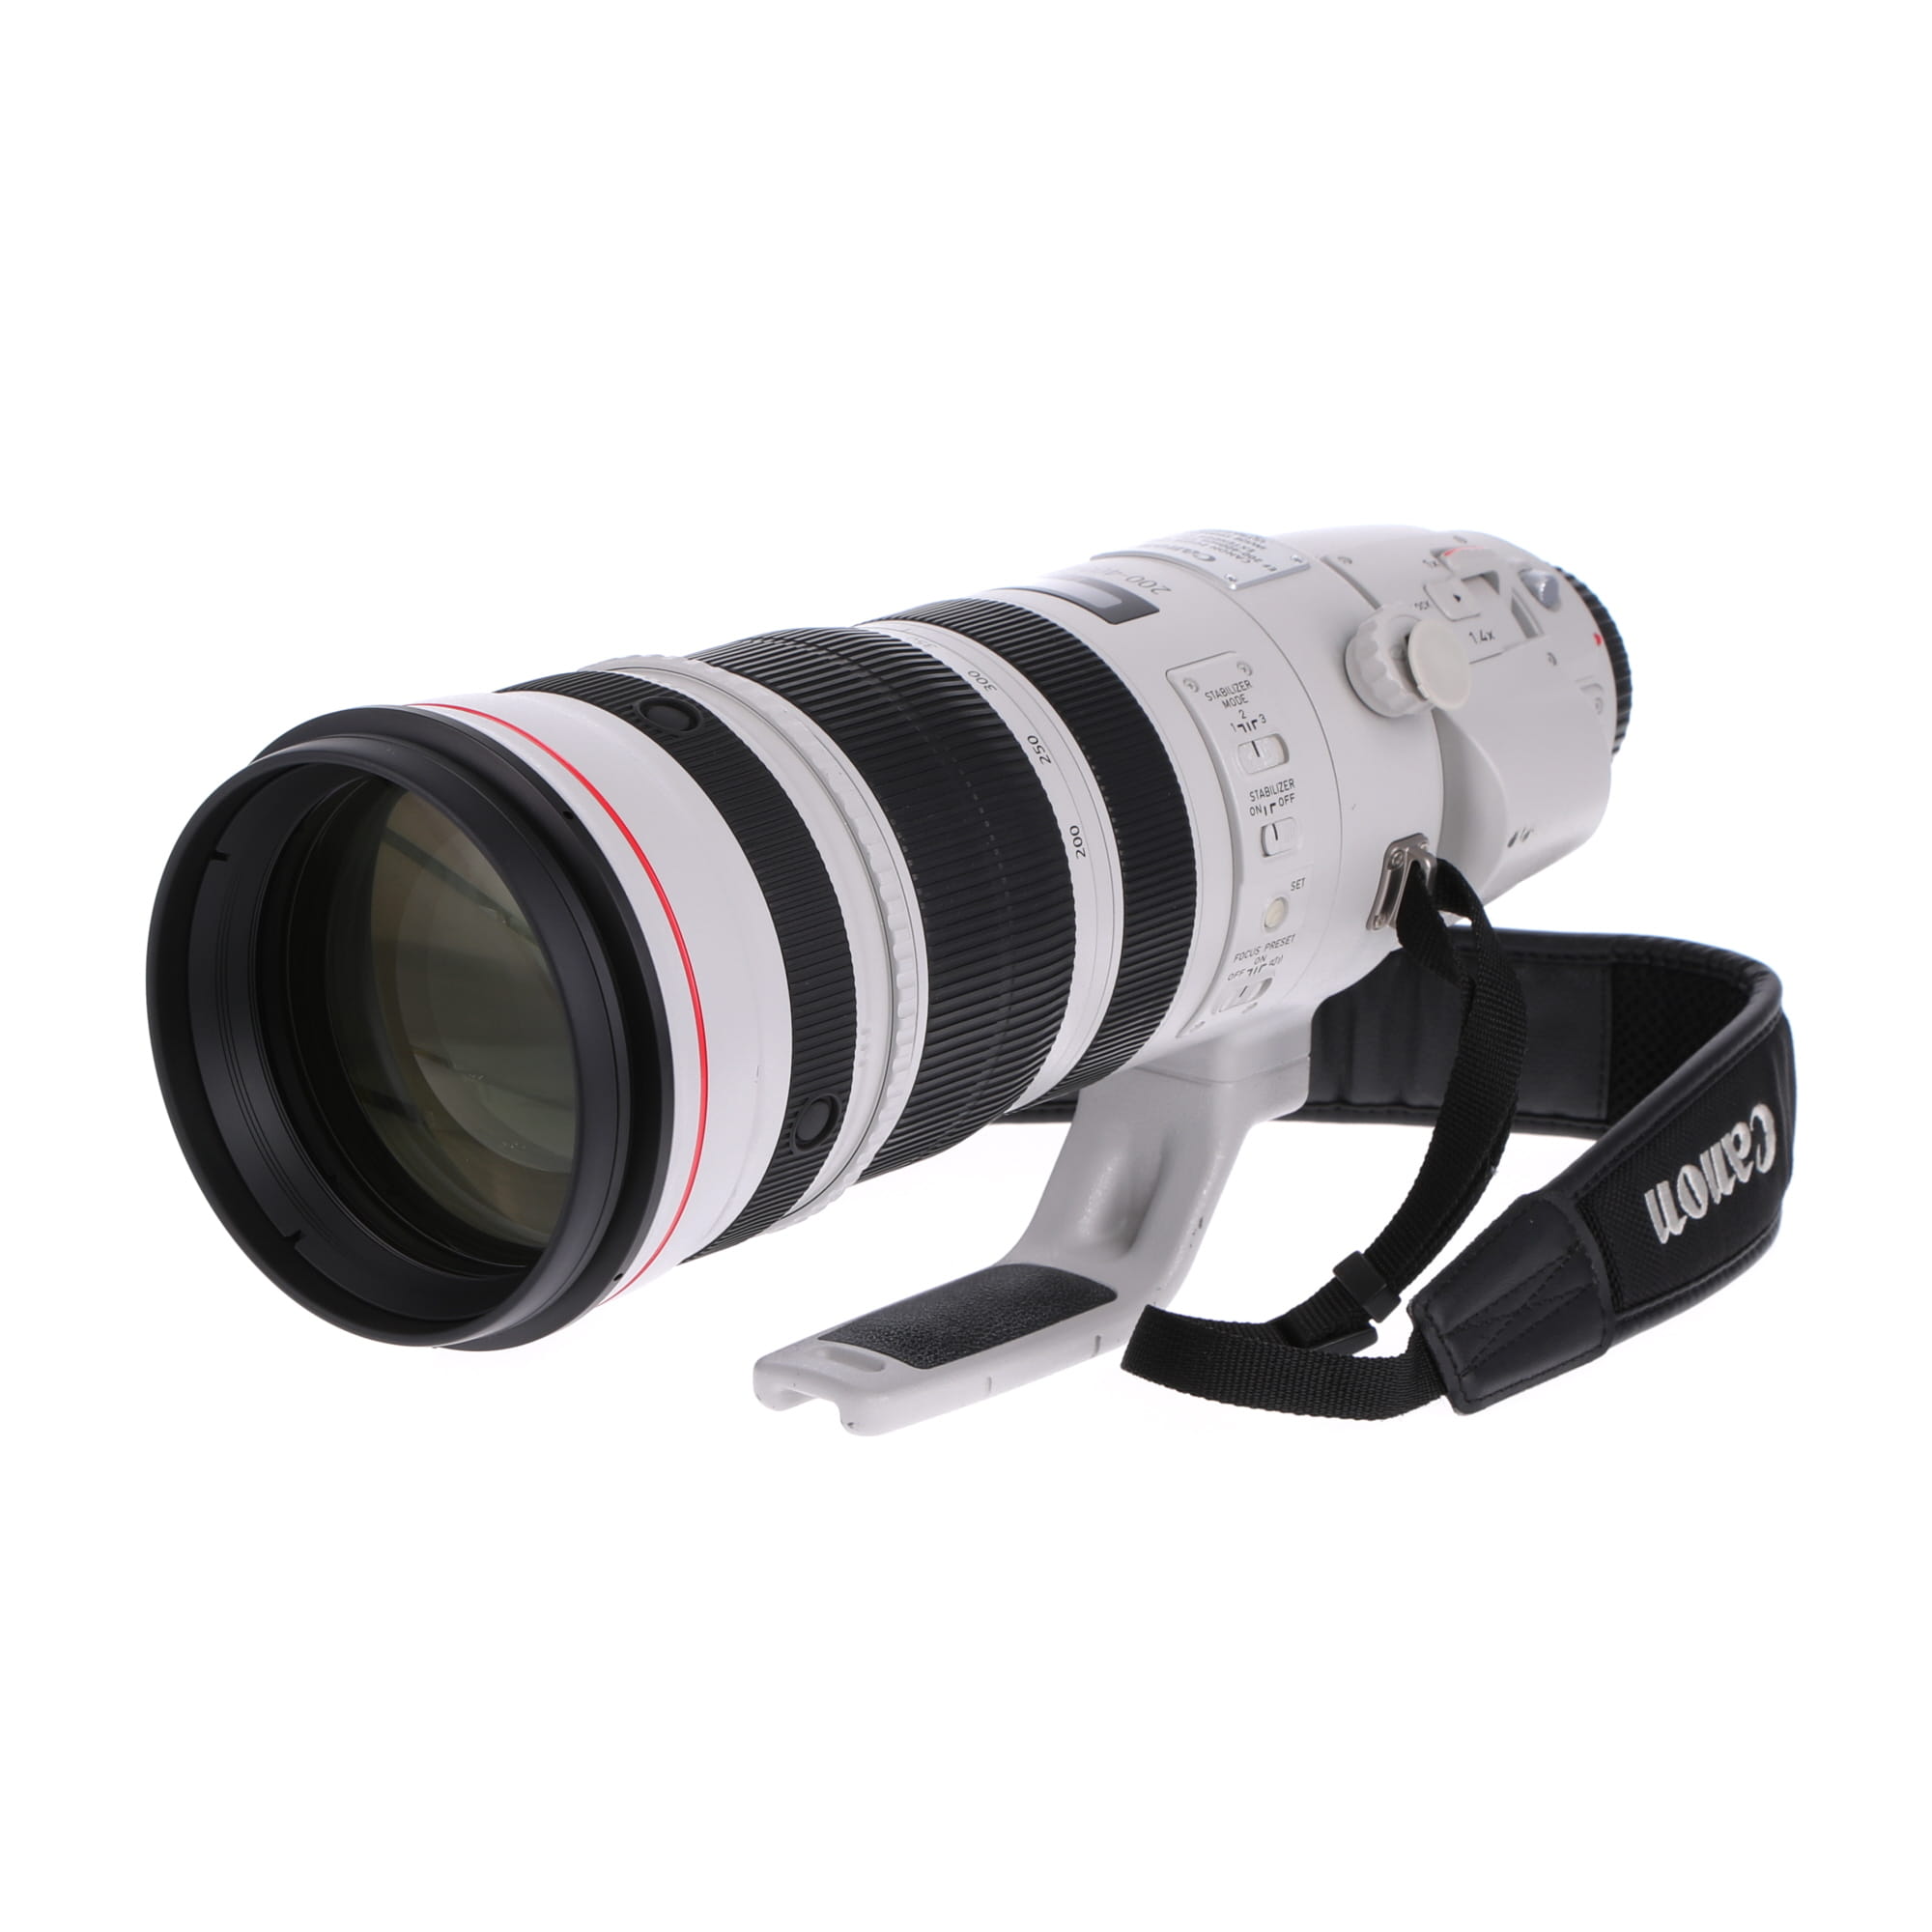 中古品】Canon EF200-400LIS 超望遠ズームレンズ EF200-400mm F4L IS